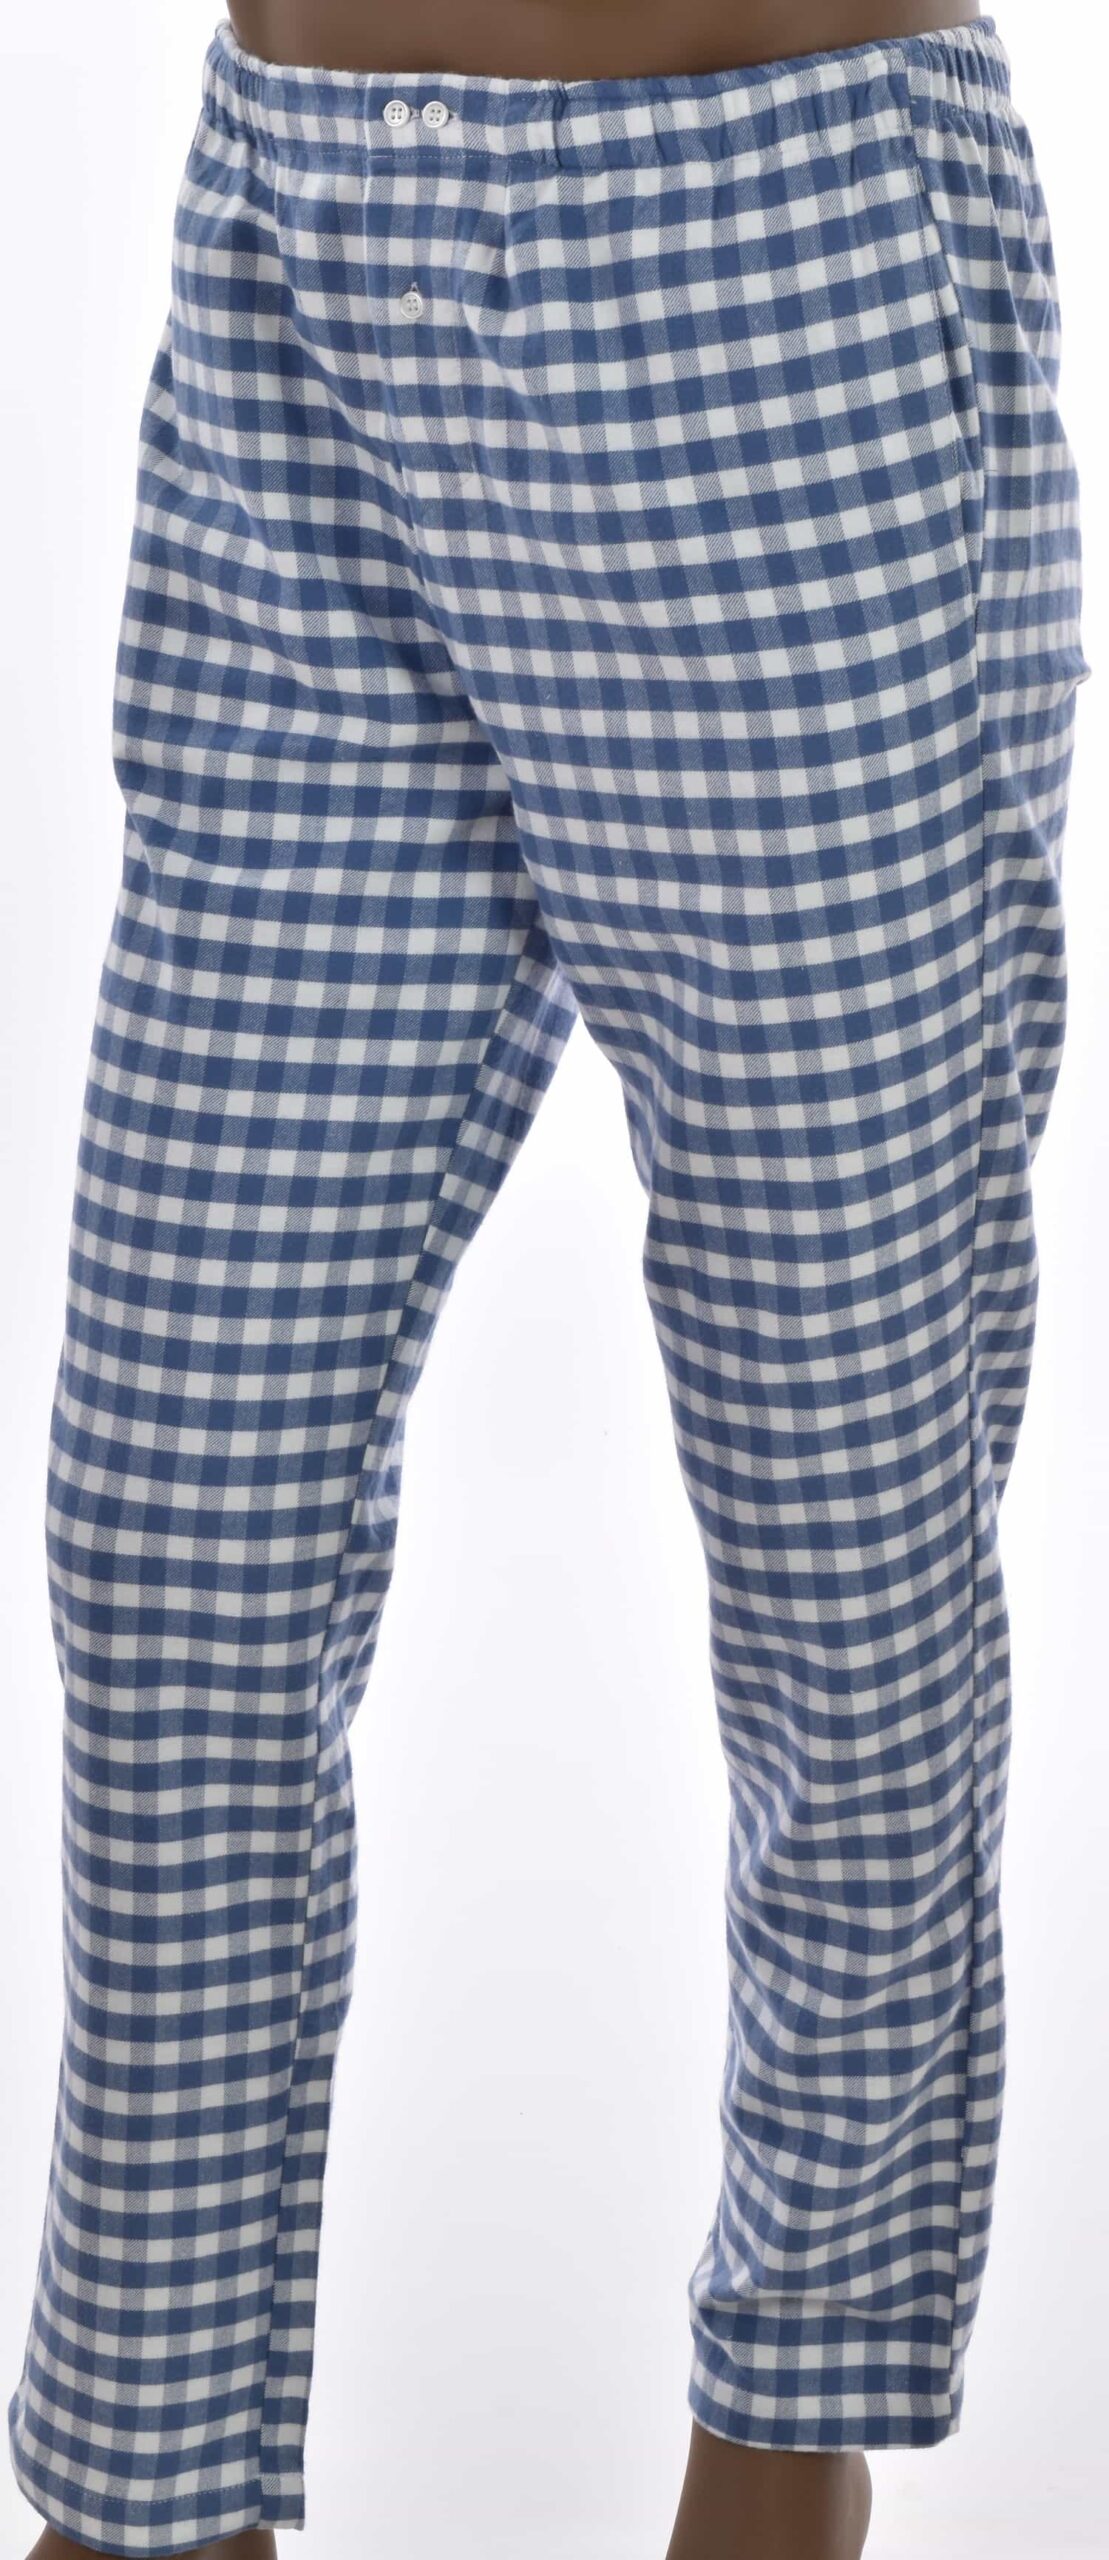 Pantalon d'interieur, bas de pyjama homme en coton Oxford ,carreaux bleu